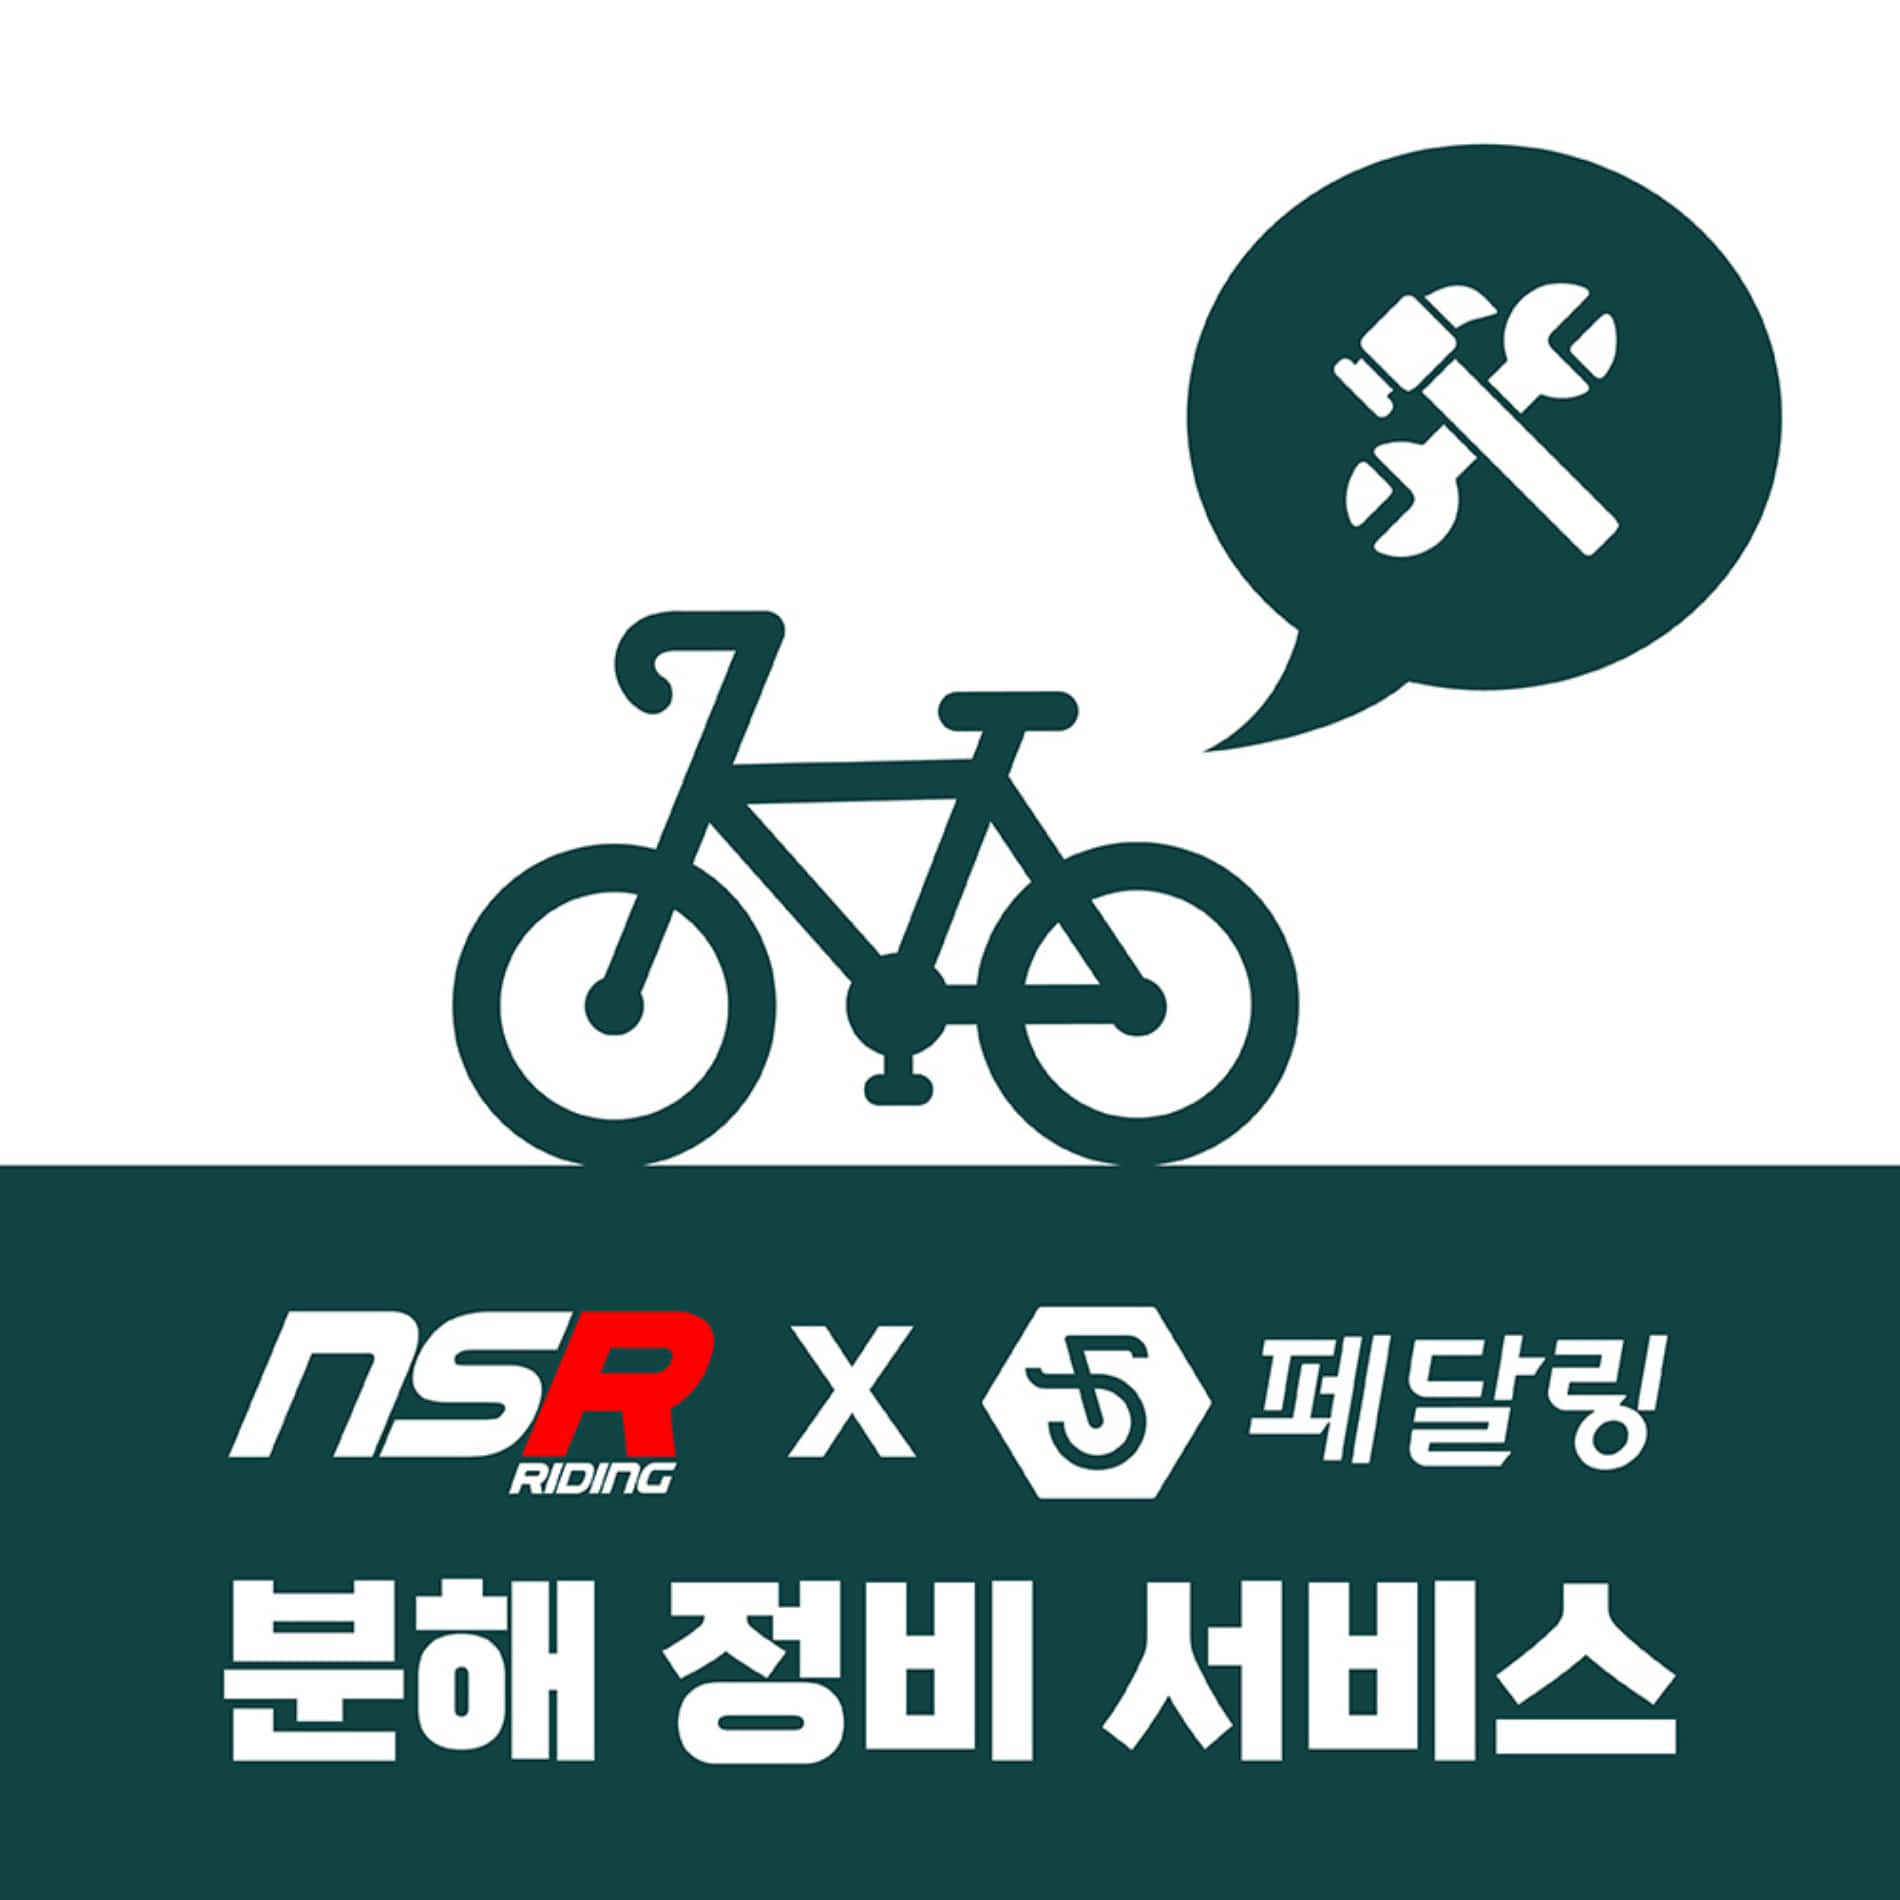 [페달링 출장정비] 자전거 분해정비 서비스